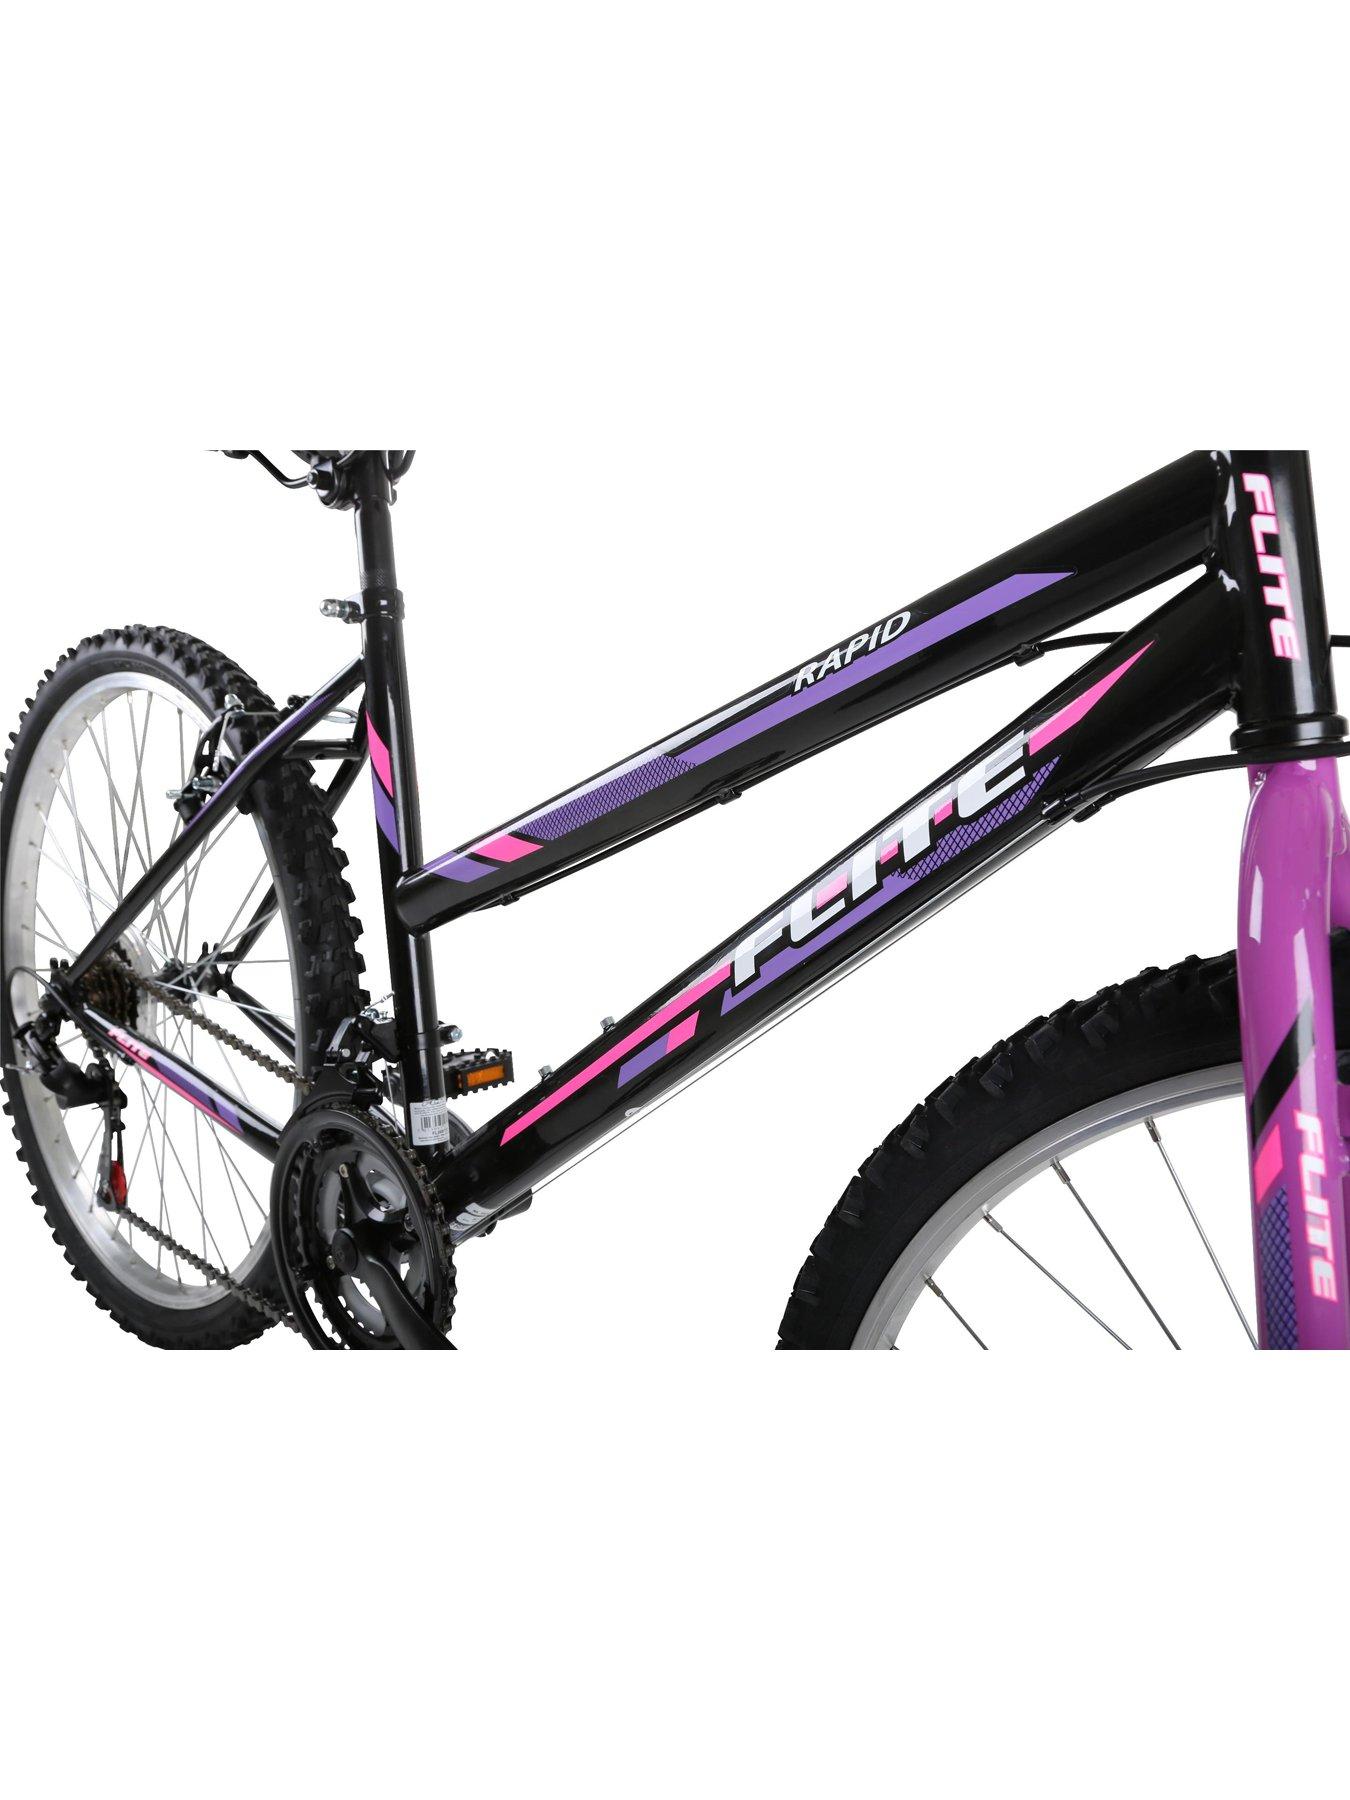 17 inch frame mountain bike